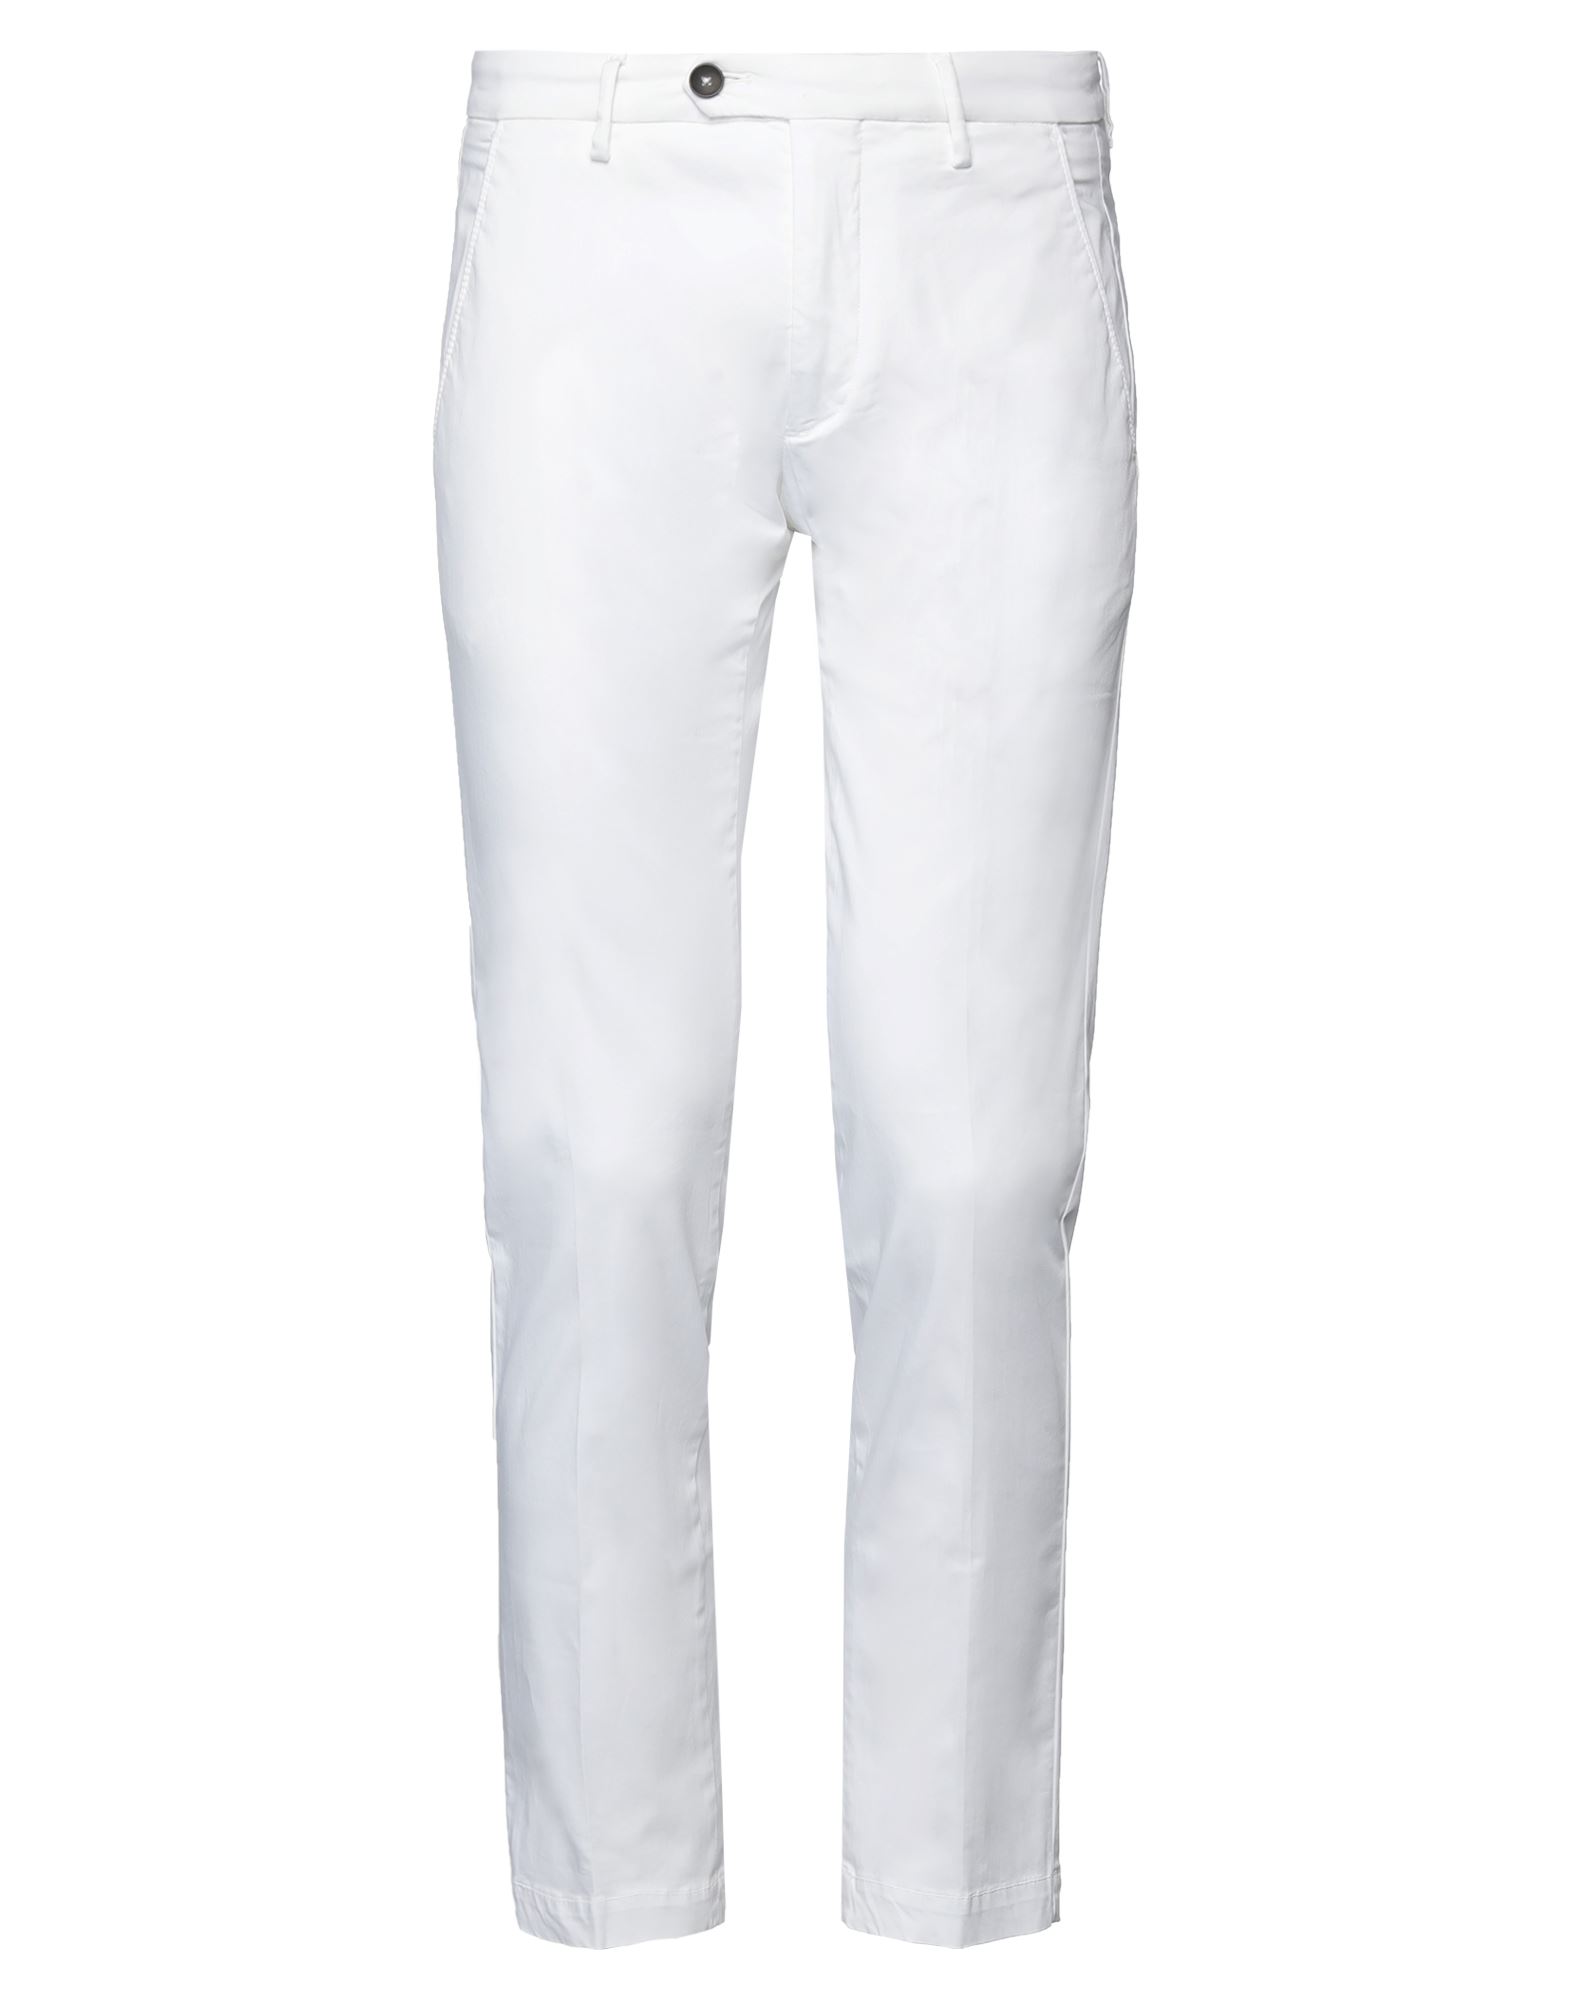 Shop Michael Coal Man Pants White Size 33 Cotton, Elastane